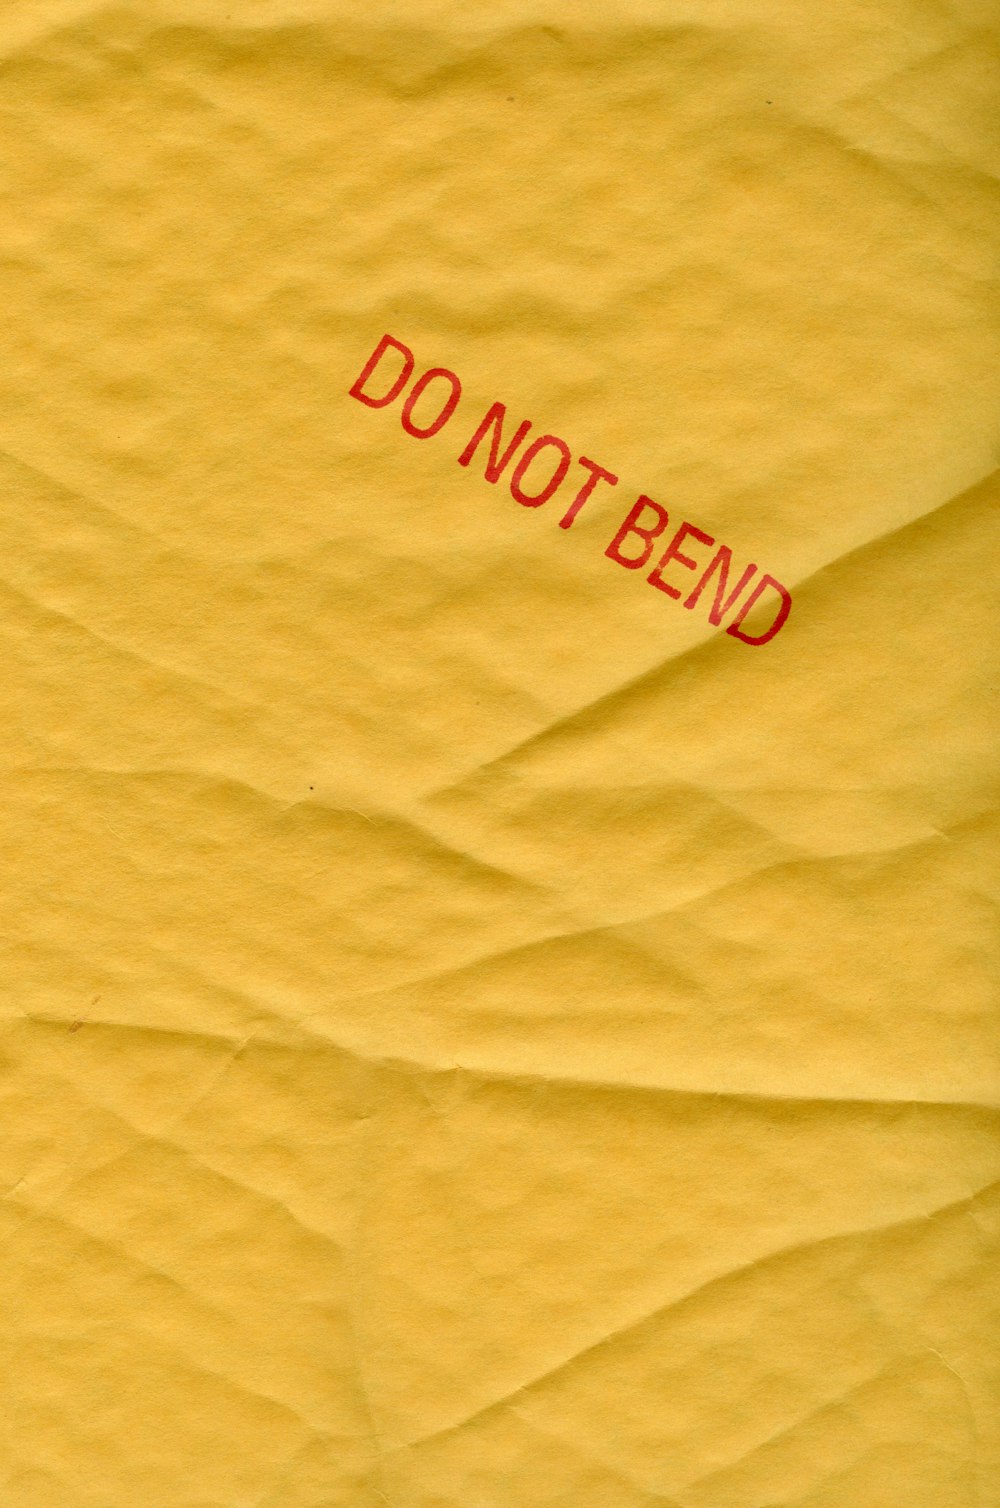 ein gelbes Stück Papier mit einem roten "Nicht betten"-Aufkleber darauf